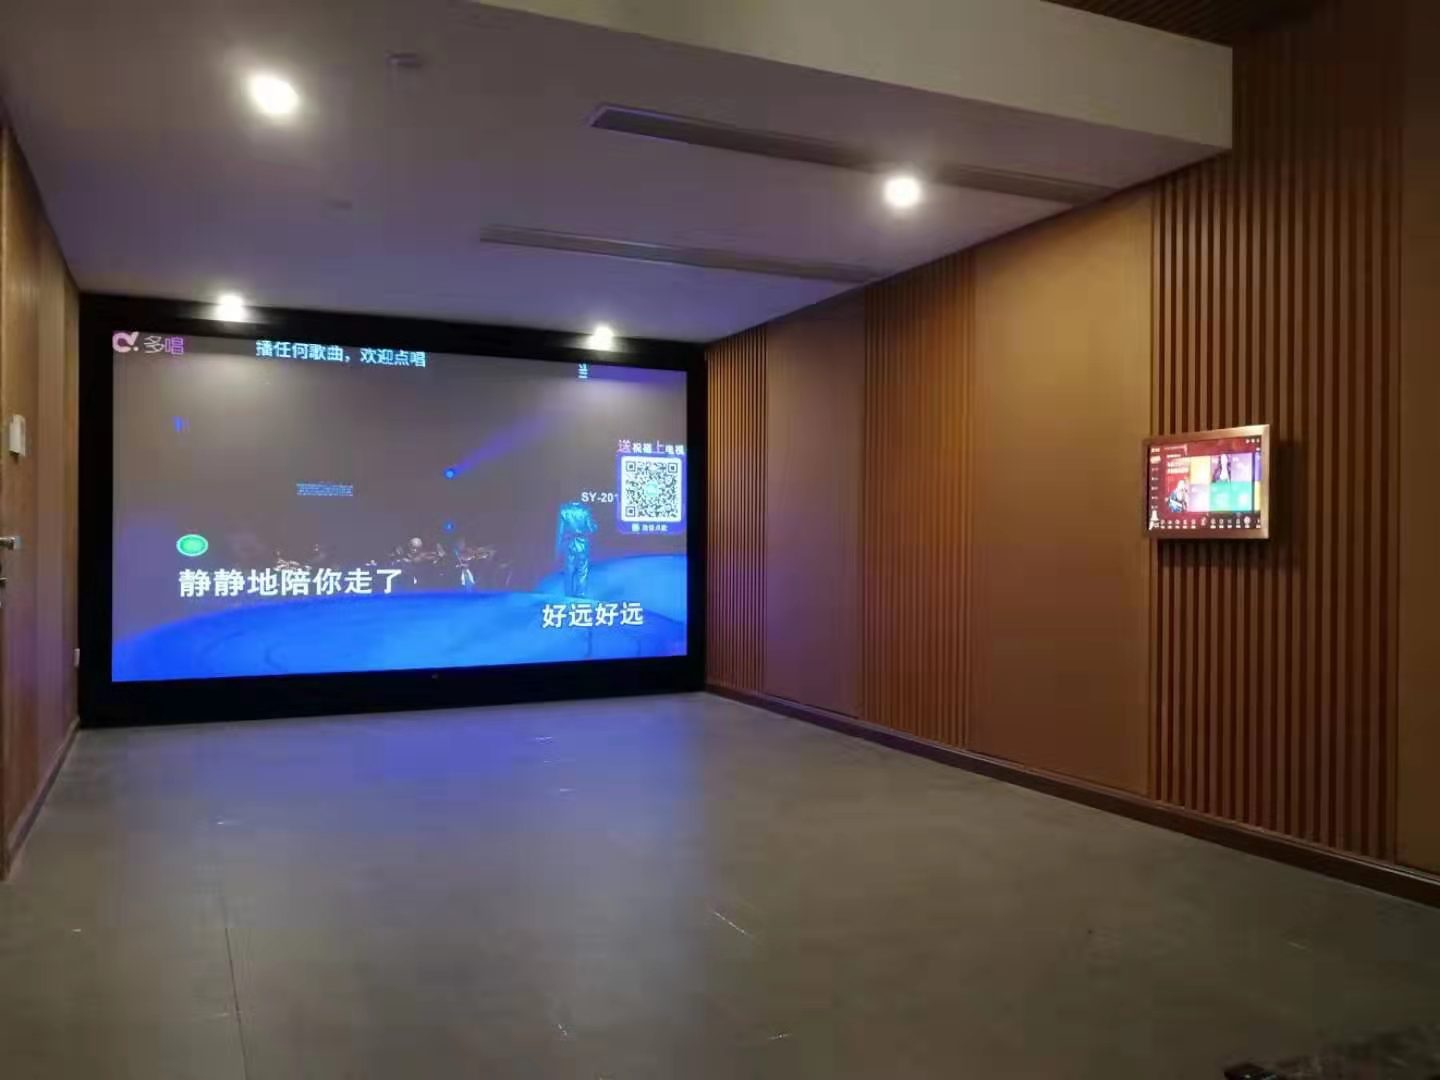 廣州星河丹堤全景聲5.2.2家庭影院裝修設計案例